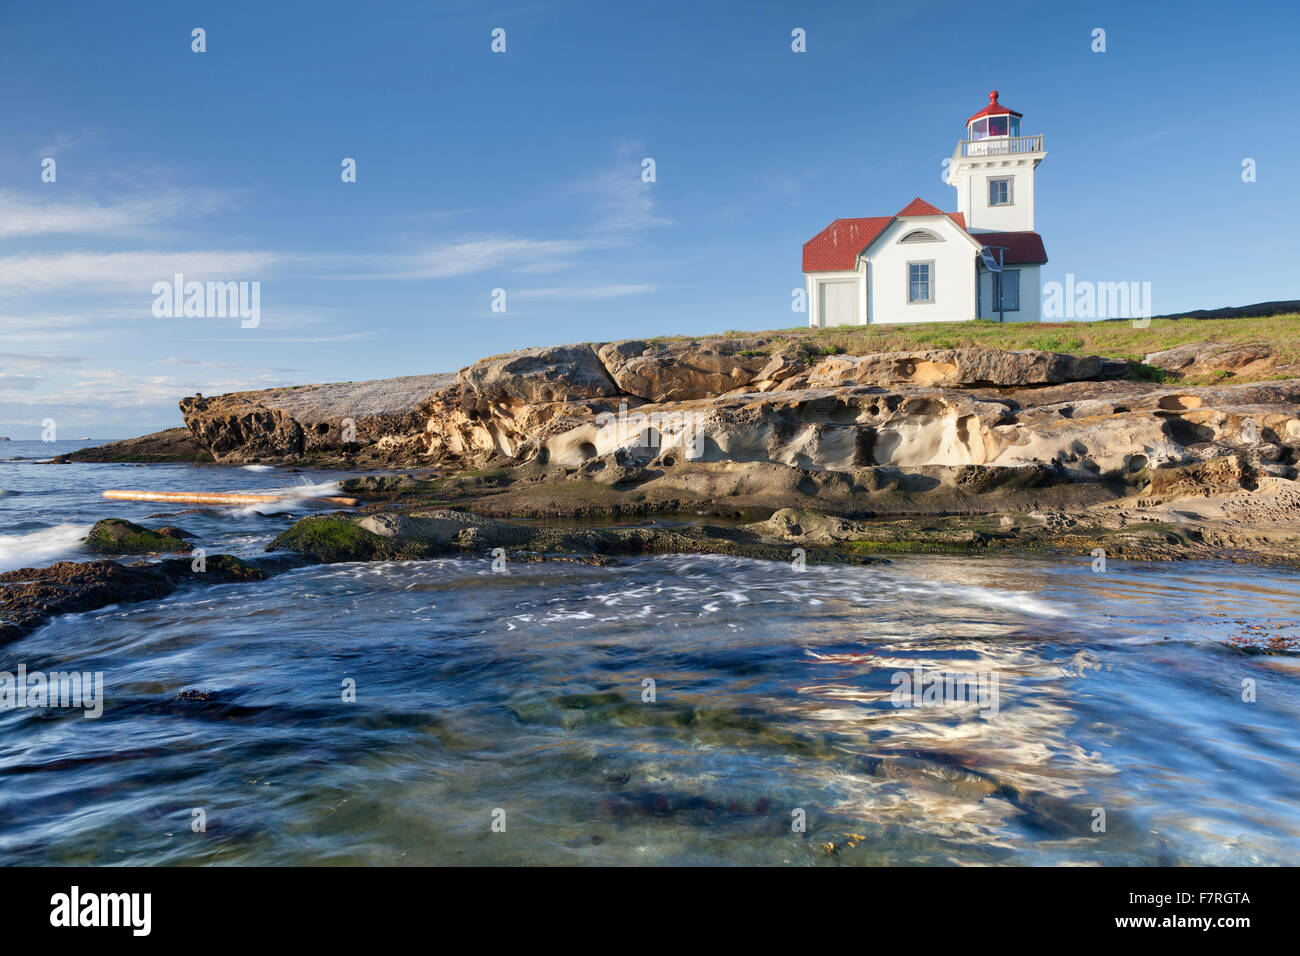 Patos Island Lighthouse, Patos Island, San Juan Islands, Washington Stock Photo